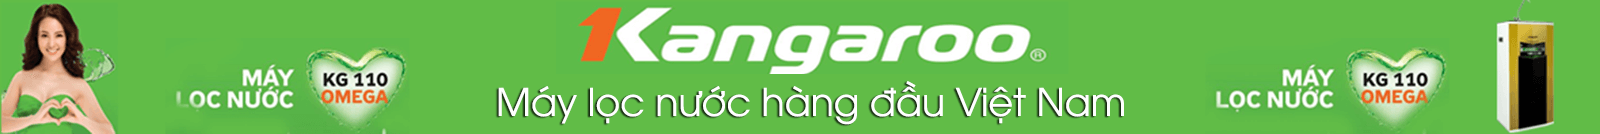 banner kangaroo may loc nuoc hang dau viet nam 2